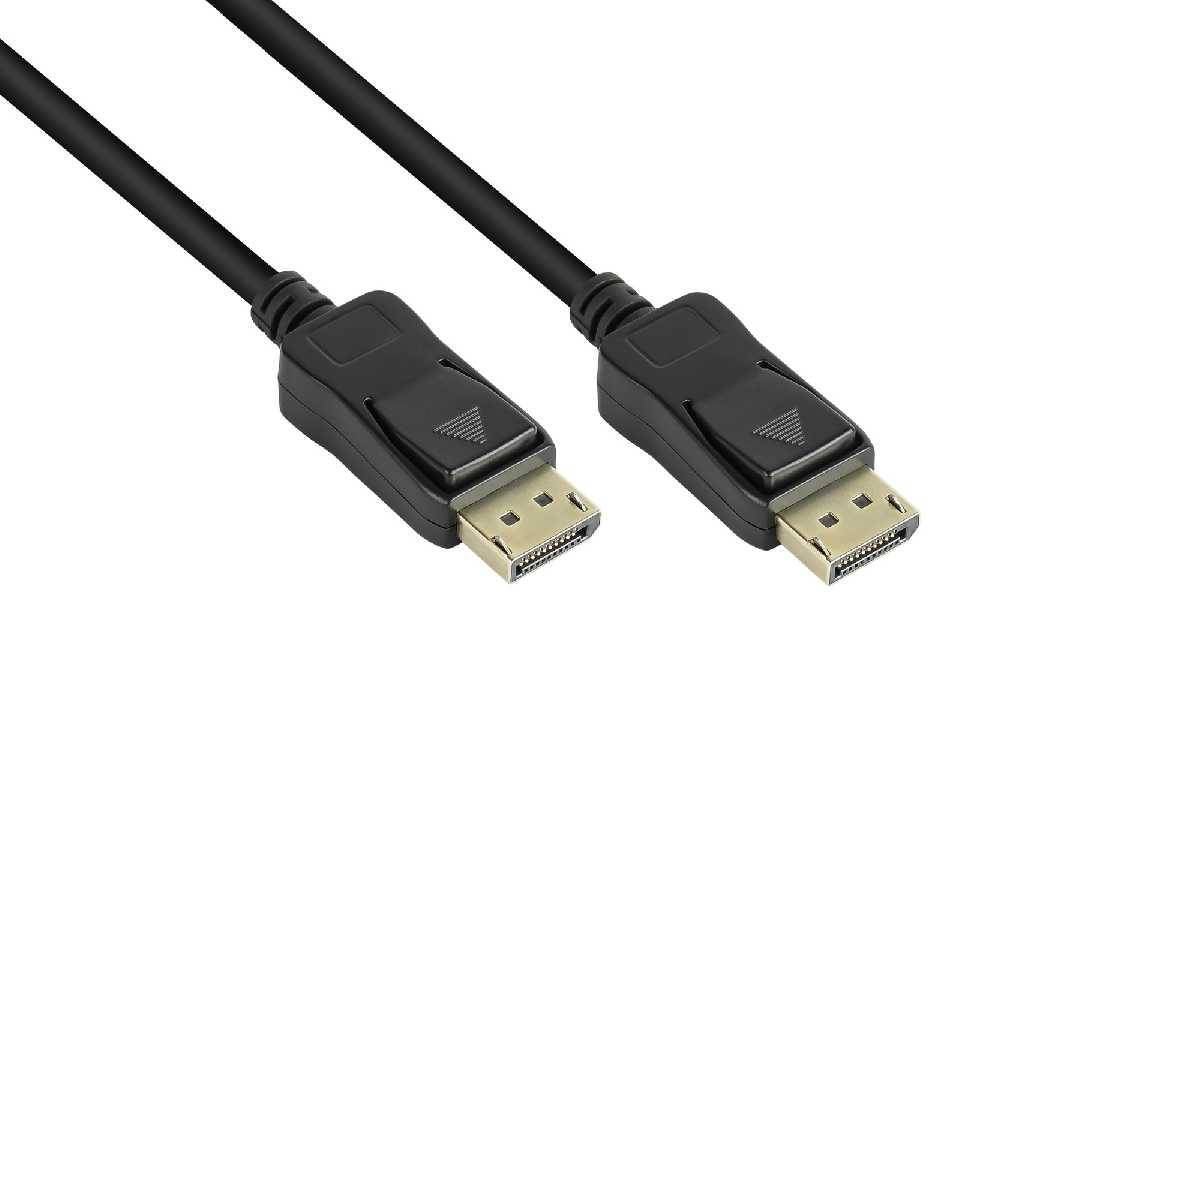 Anschlusskabel DisplayPort 1.2 Stecker inkl. Verriegelungsschutz schwarz,